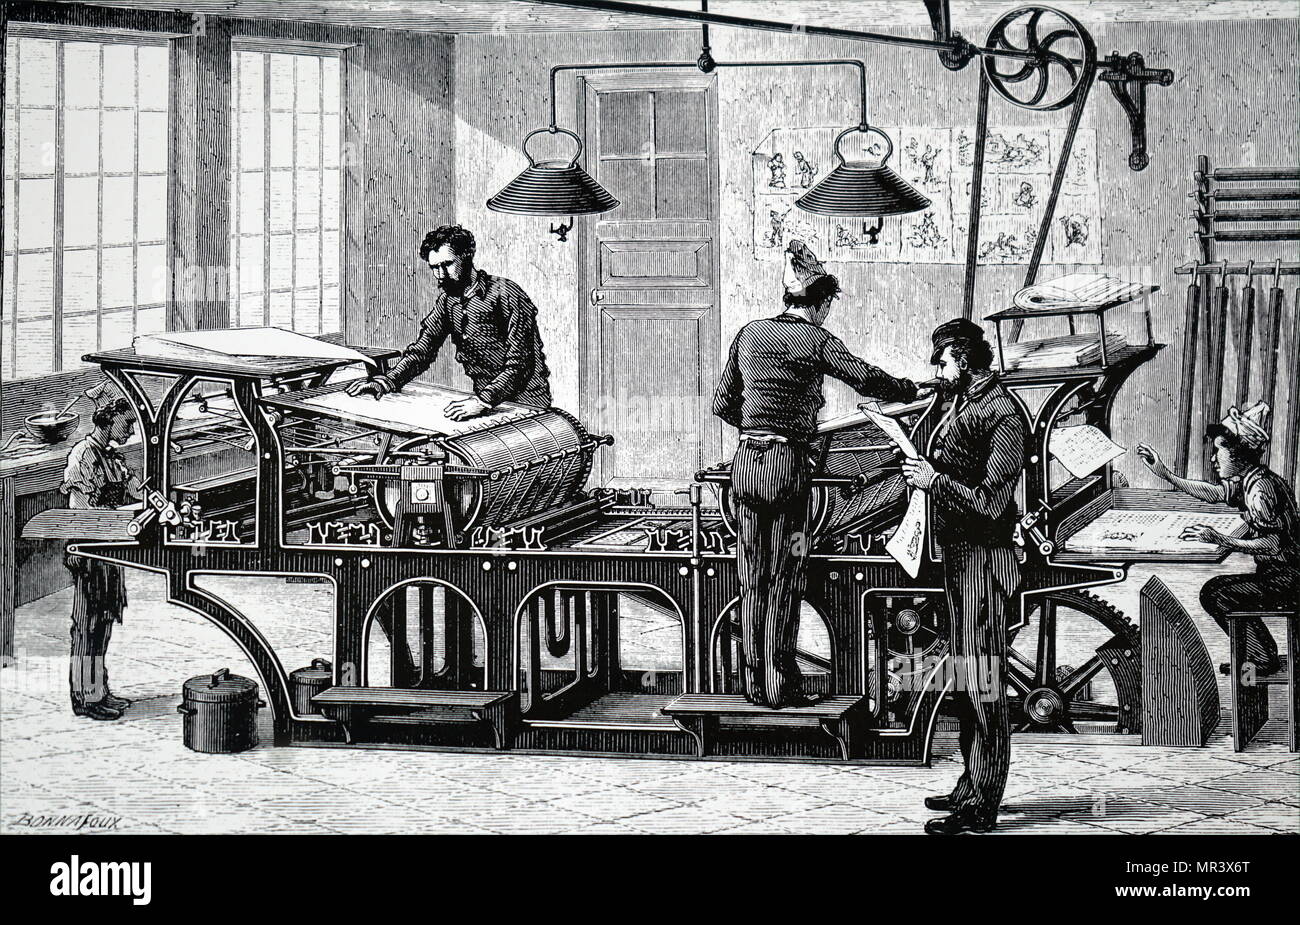 Abbildung: Darstellung einer Druckmaschine von einer Dampfmaschine angetrieben. Wurde die Maschine von einer obenliegenden Welle und Riemenantrieb gebracht. Stockfoto